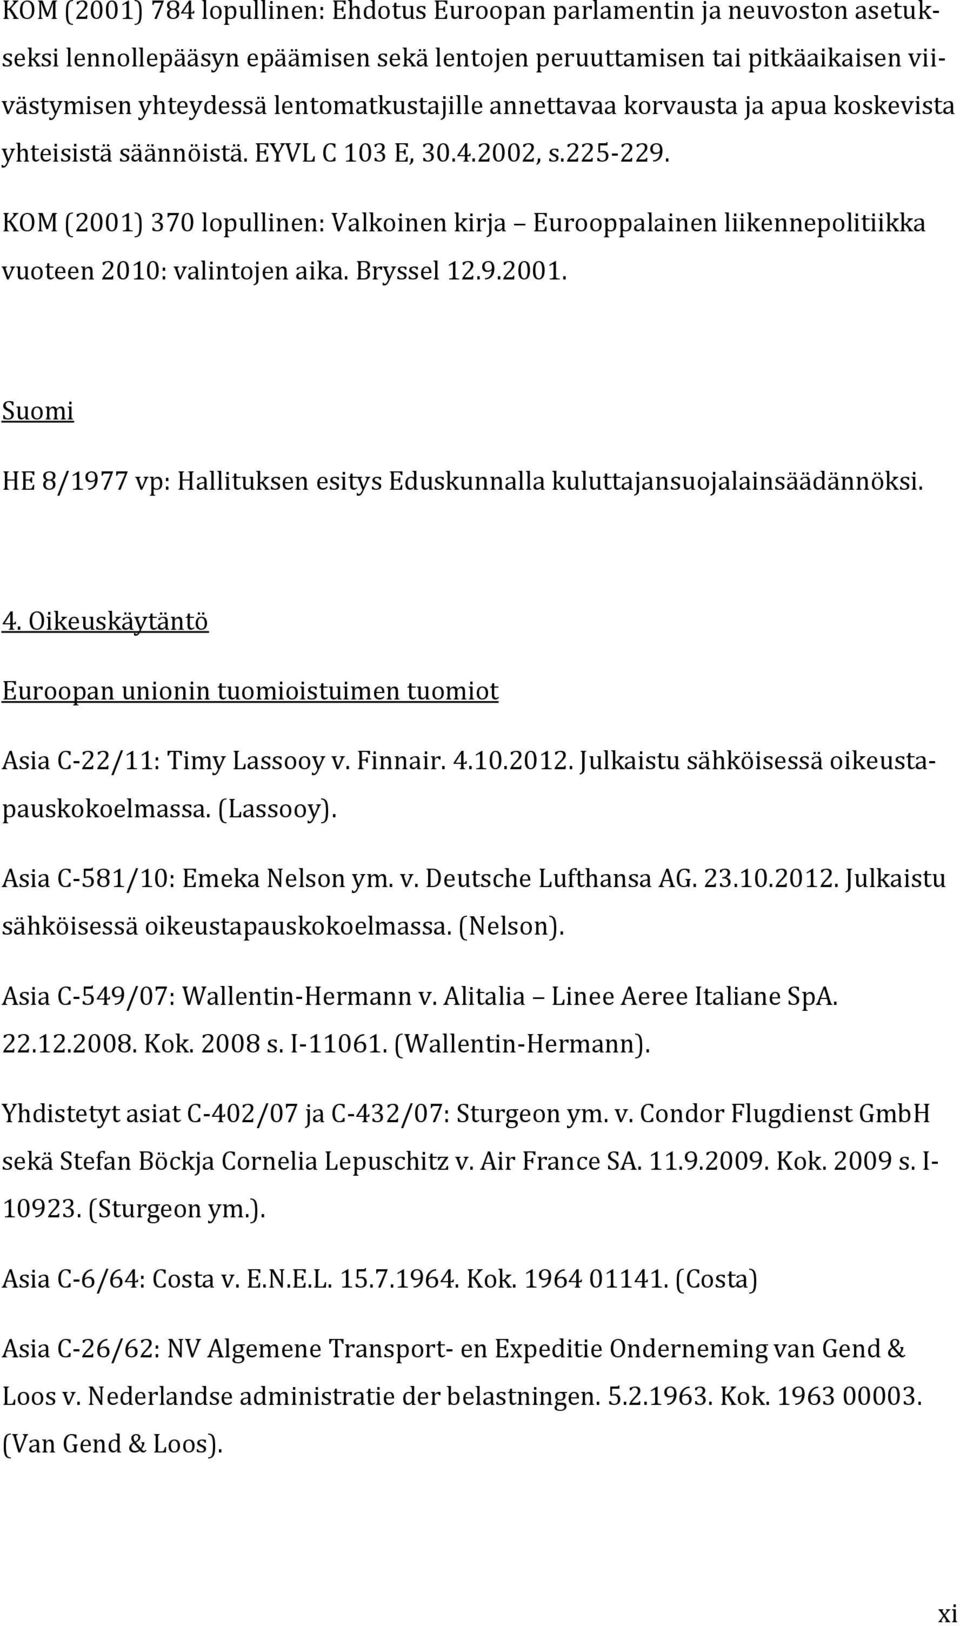 KOM (2001) 370 lopullinen: Valkoinen kirja Eurooppalainen liikennepolitiikka vuoteen 2010: valintojen aika. Bryssel 12.9.2001. Suomi HE 8/1977 vp: Hallituksen esitys Eduskunnalla kuluttajansuojalainsäädännöksi.